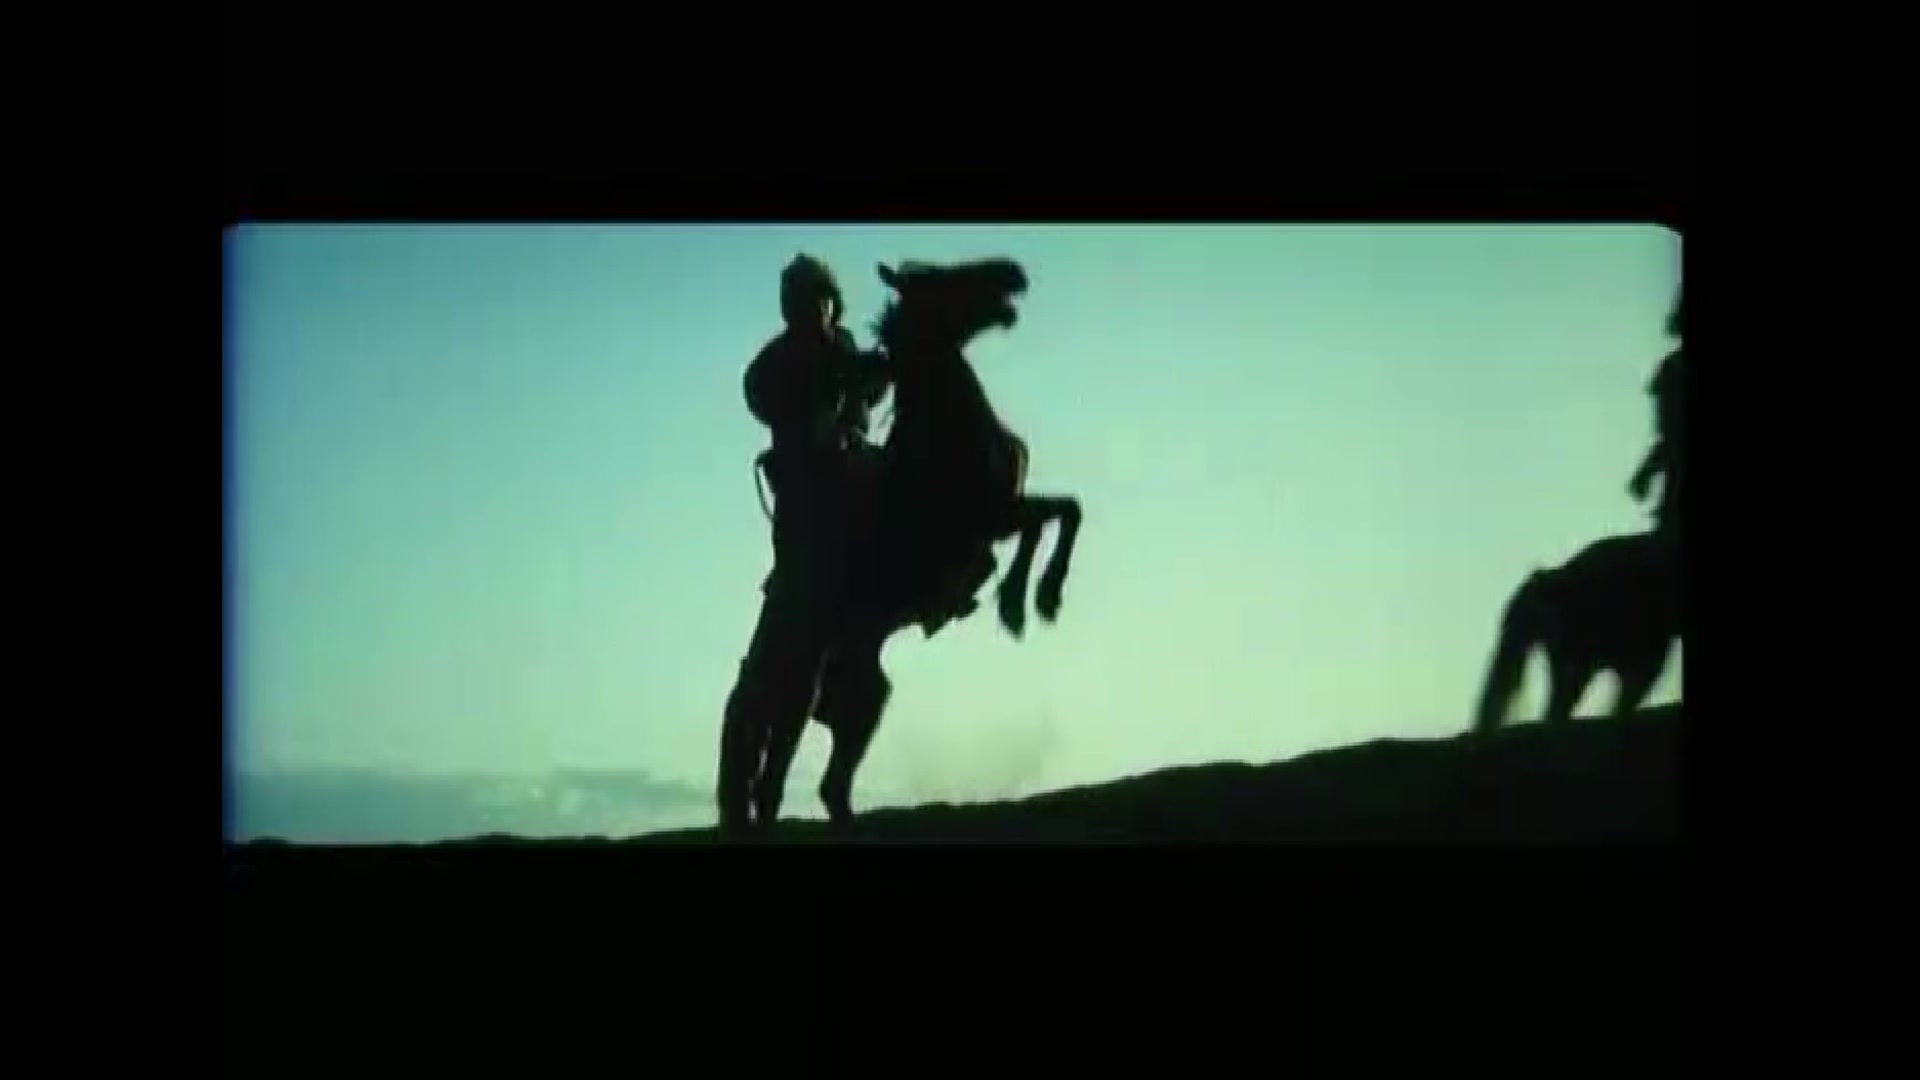 骑士的荣誉——蒙古战士在抗日战争中的英雄故事